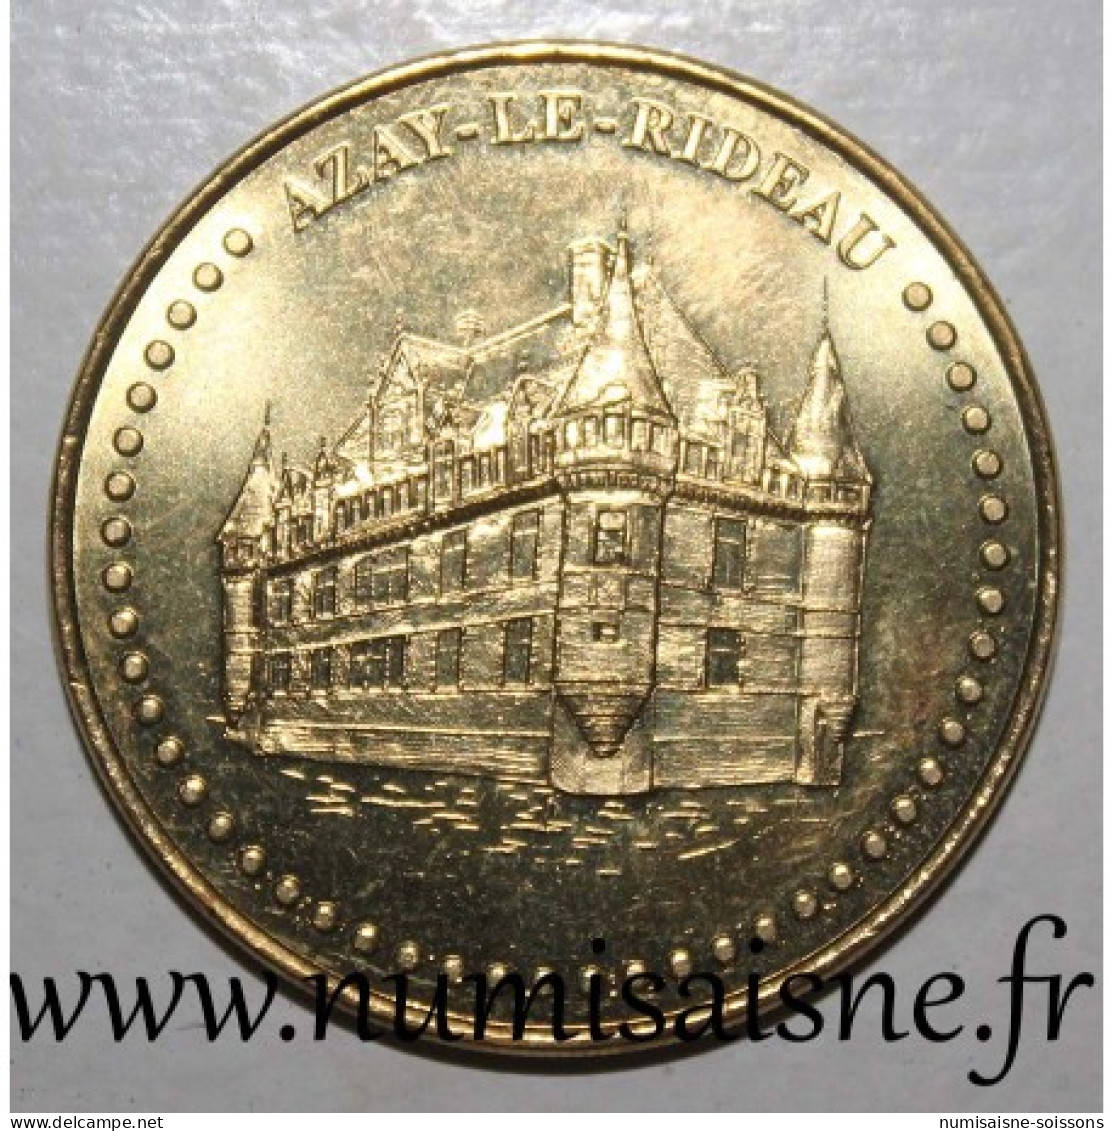 37 - AZAY LE RIDEAU - CHATEAU - Monnaie De Paris - 2016 - 2016